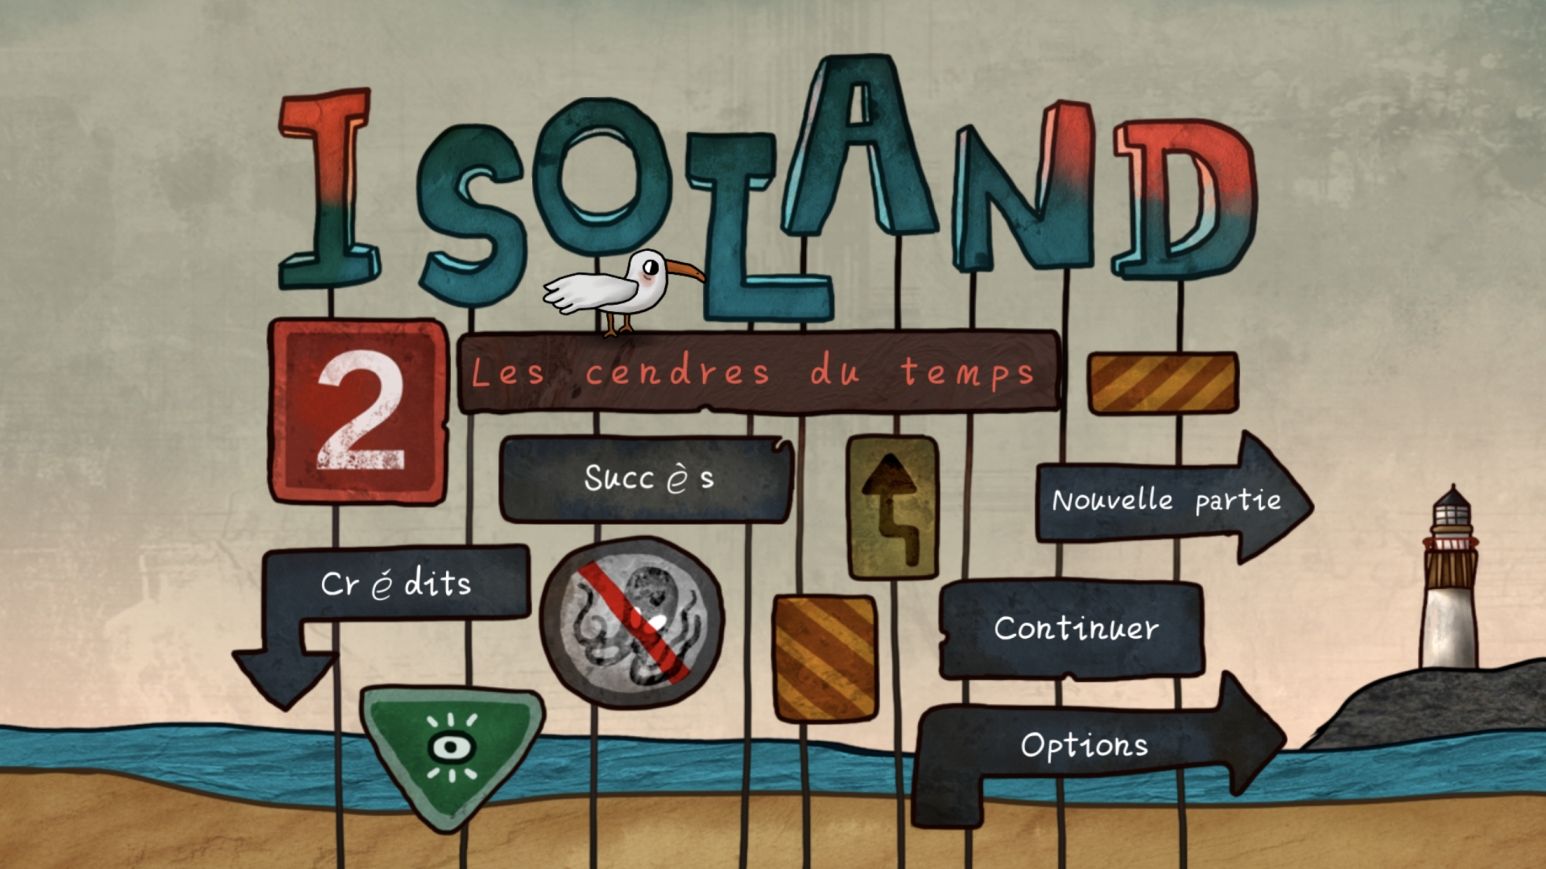 Isoland 2: Ashes of Time (copie d'écran 1 sur Android)